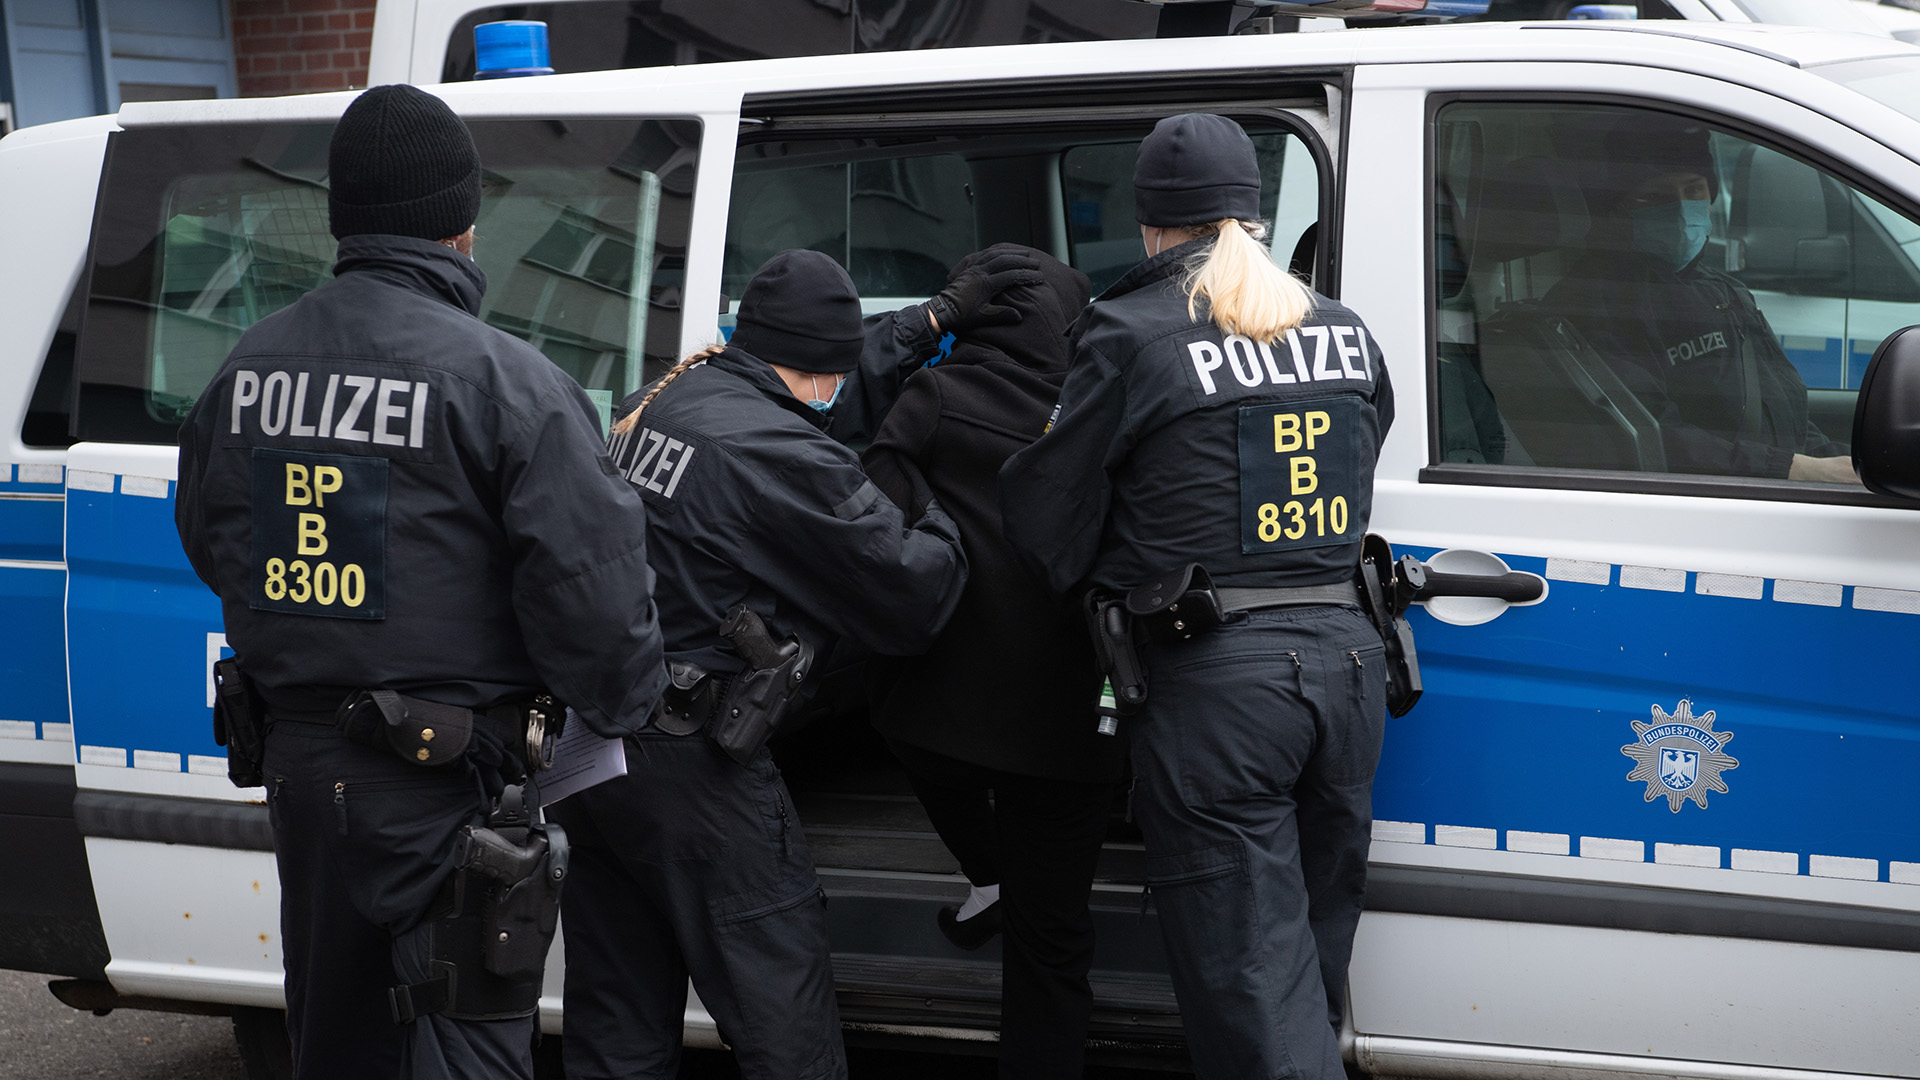 Bundespolizisten im Einsatz | picture alliance/dpa/dpa-Zentral